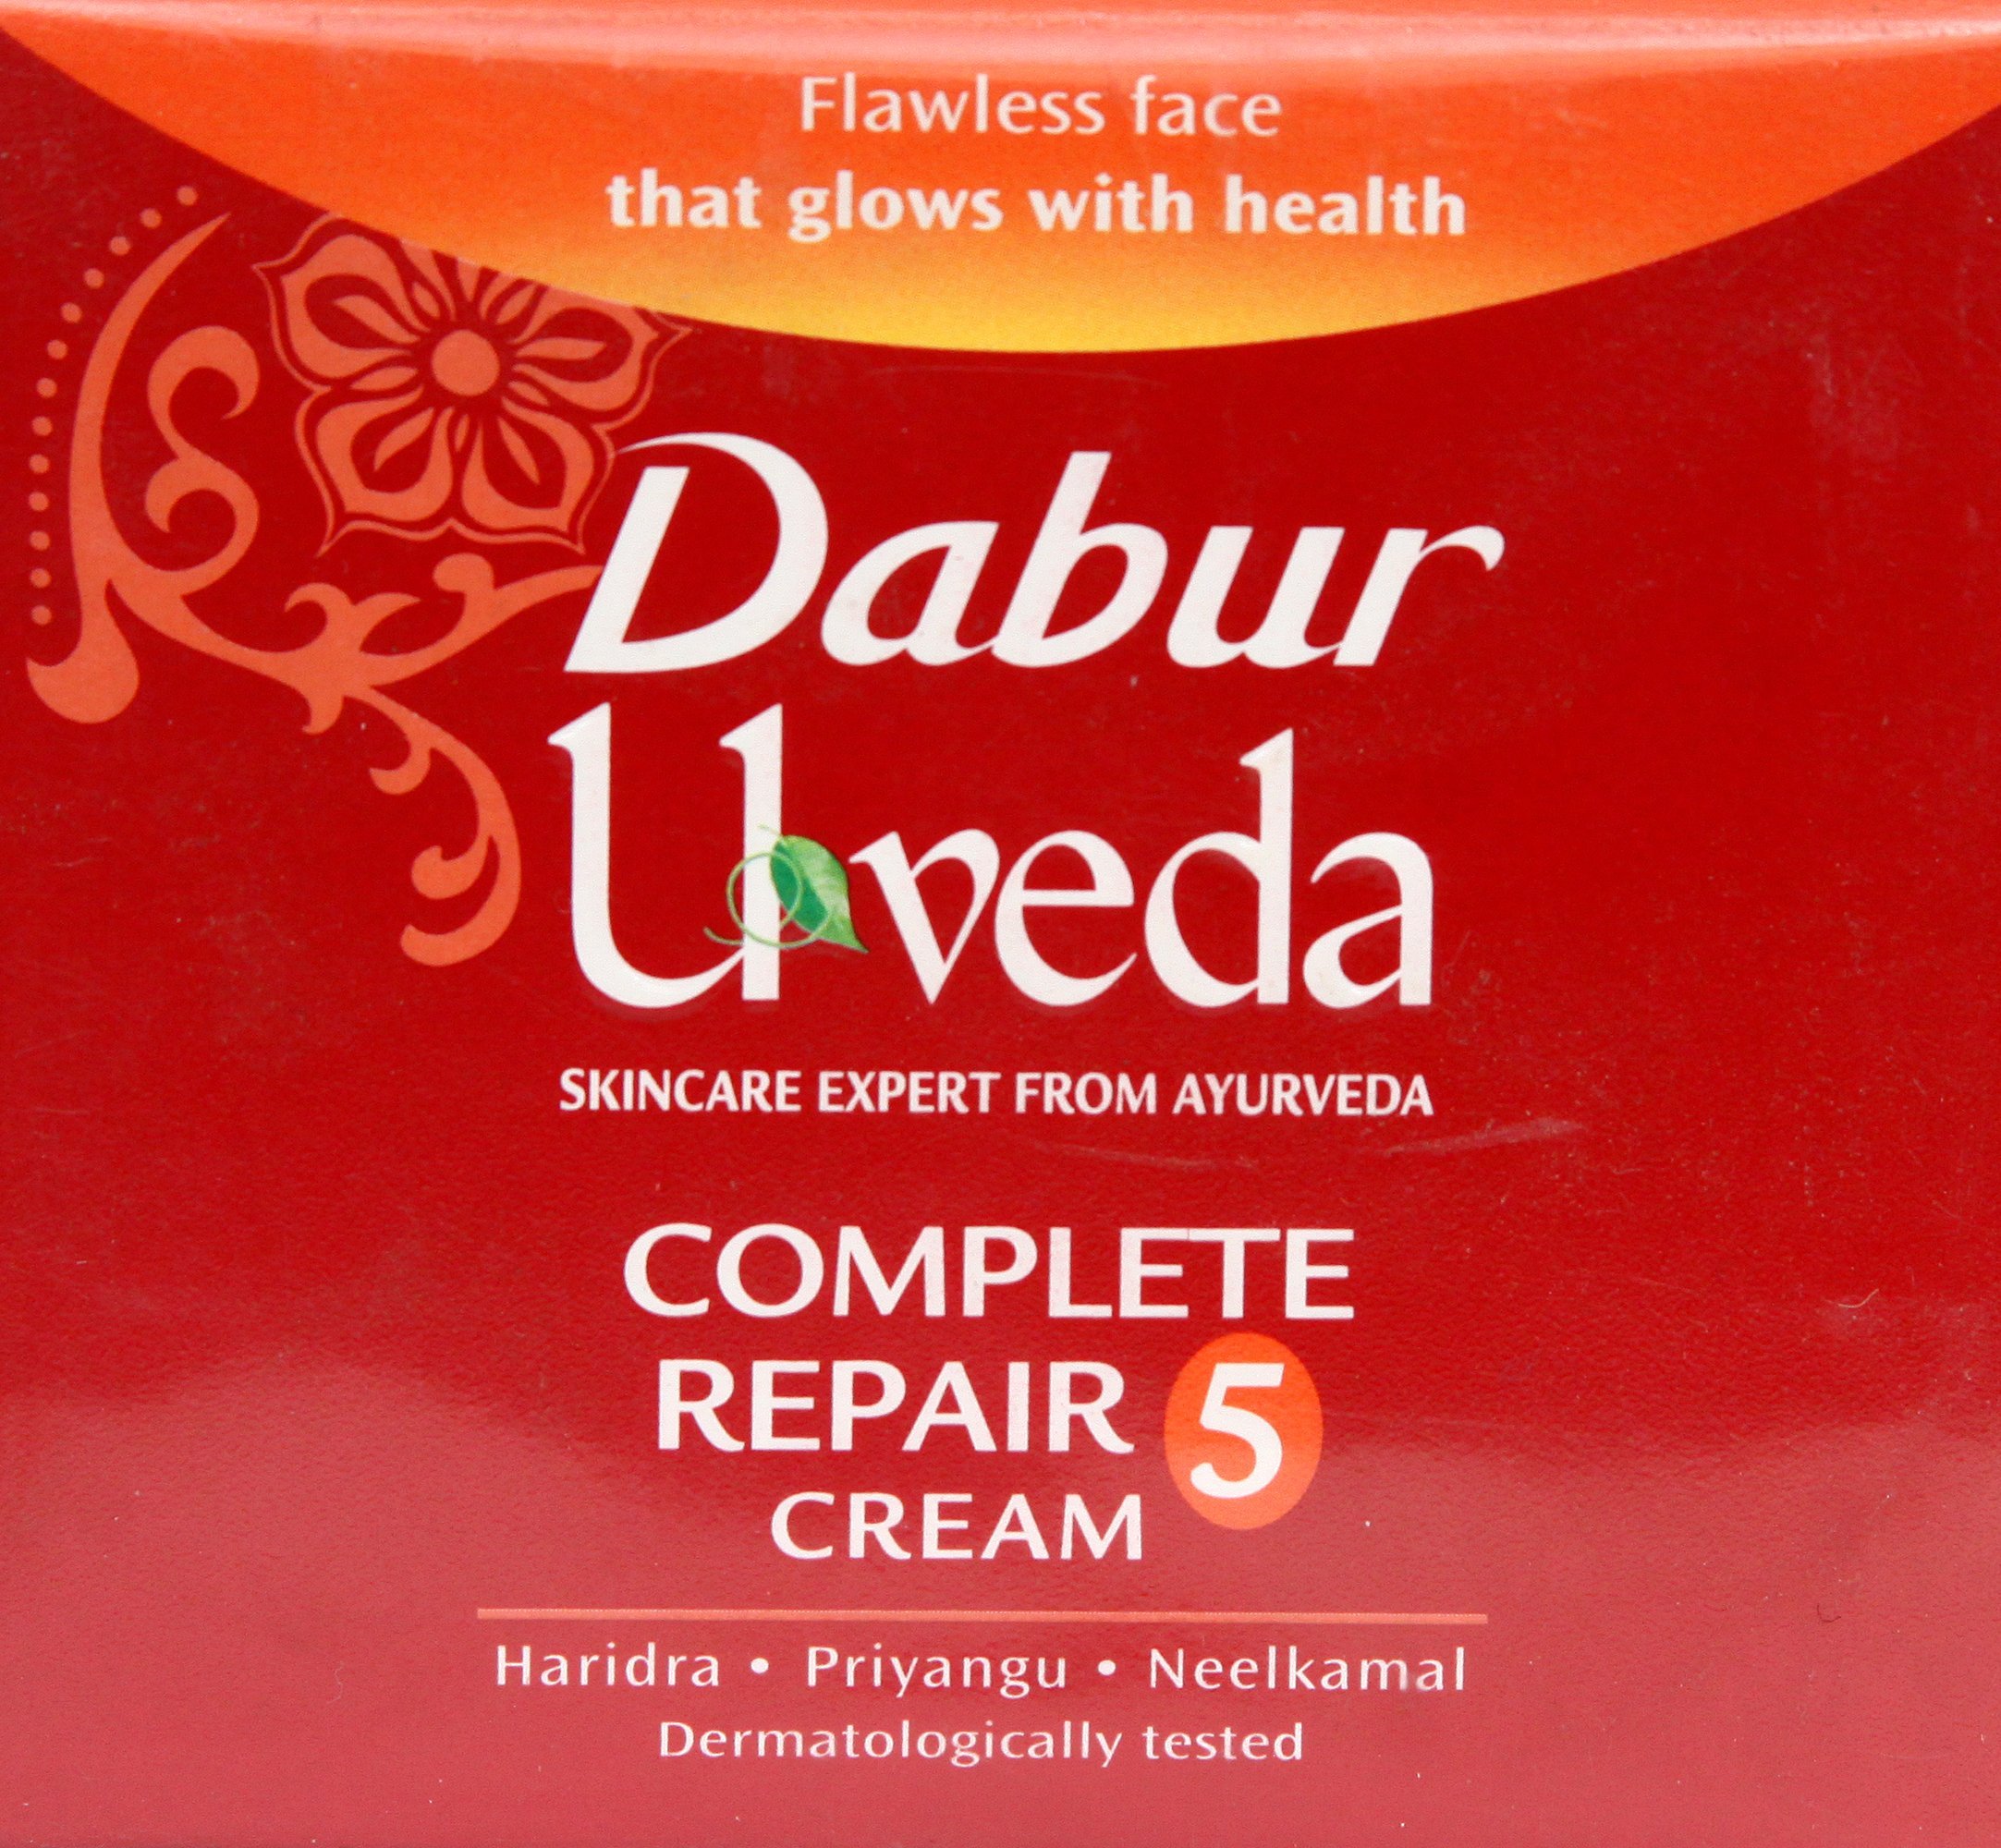 Dabur Uveda Complete Repair 5 Cream - book cover